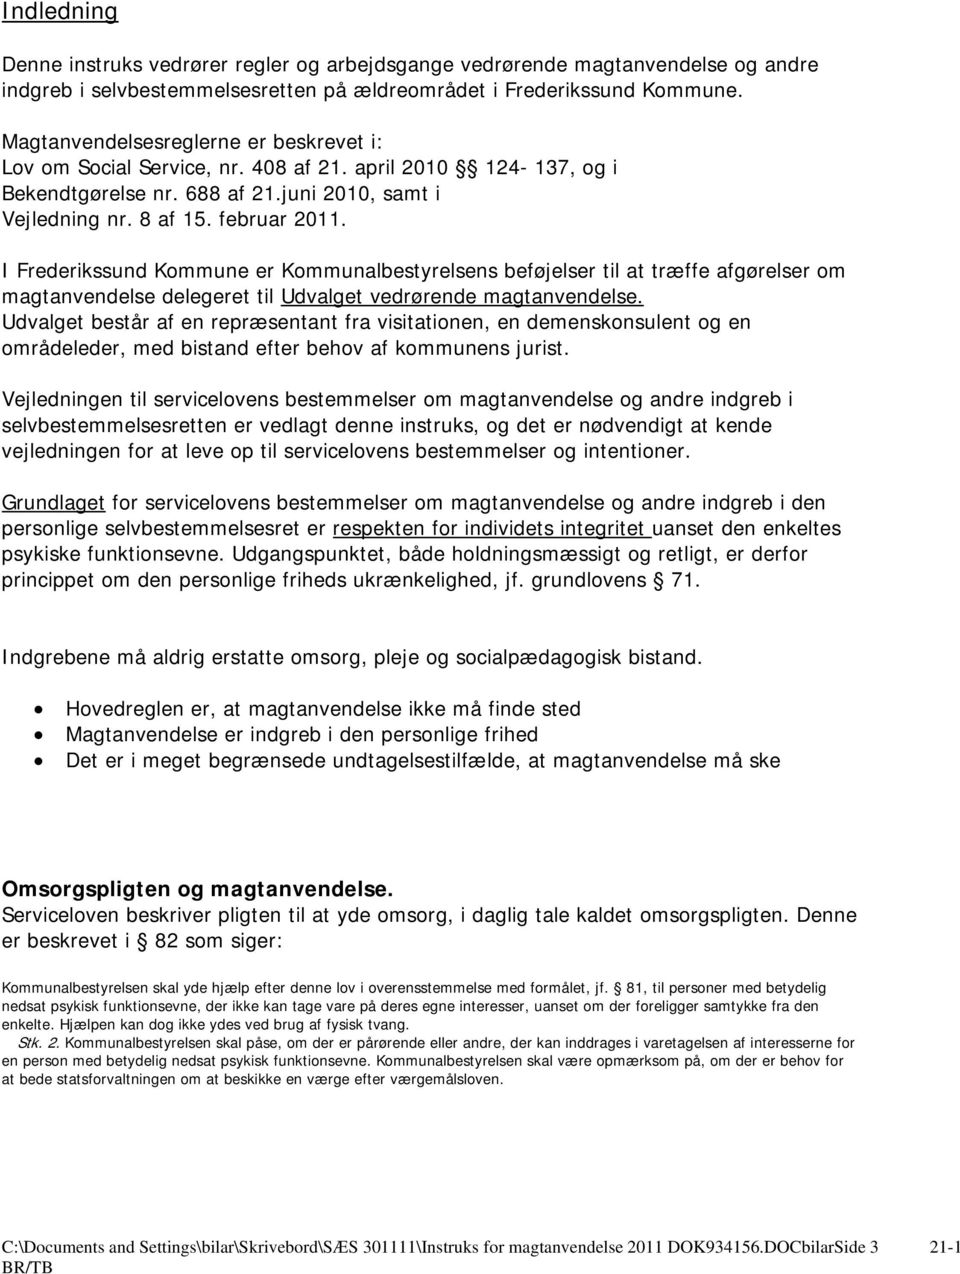 I Frederikssund Kommune er Kommunalbestyrelsens beføjelser til at træffe afgørelser om magtanvendelse delegeret til Udvalget vedrørende magtanvendelse.